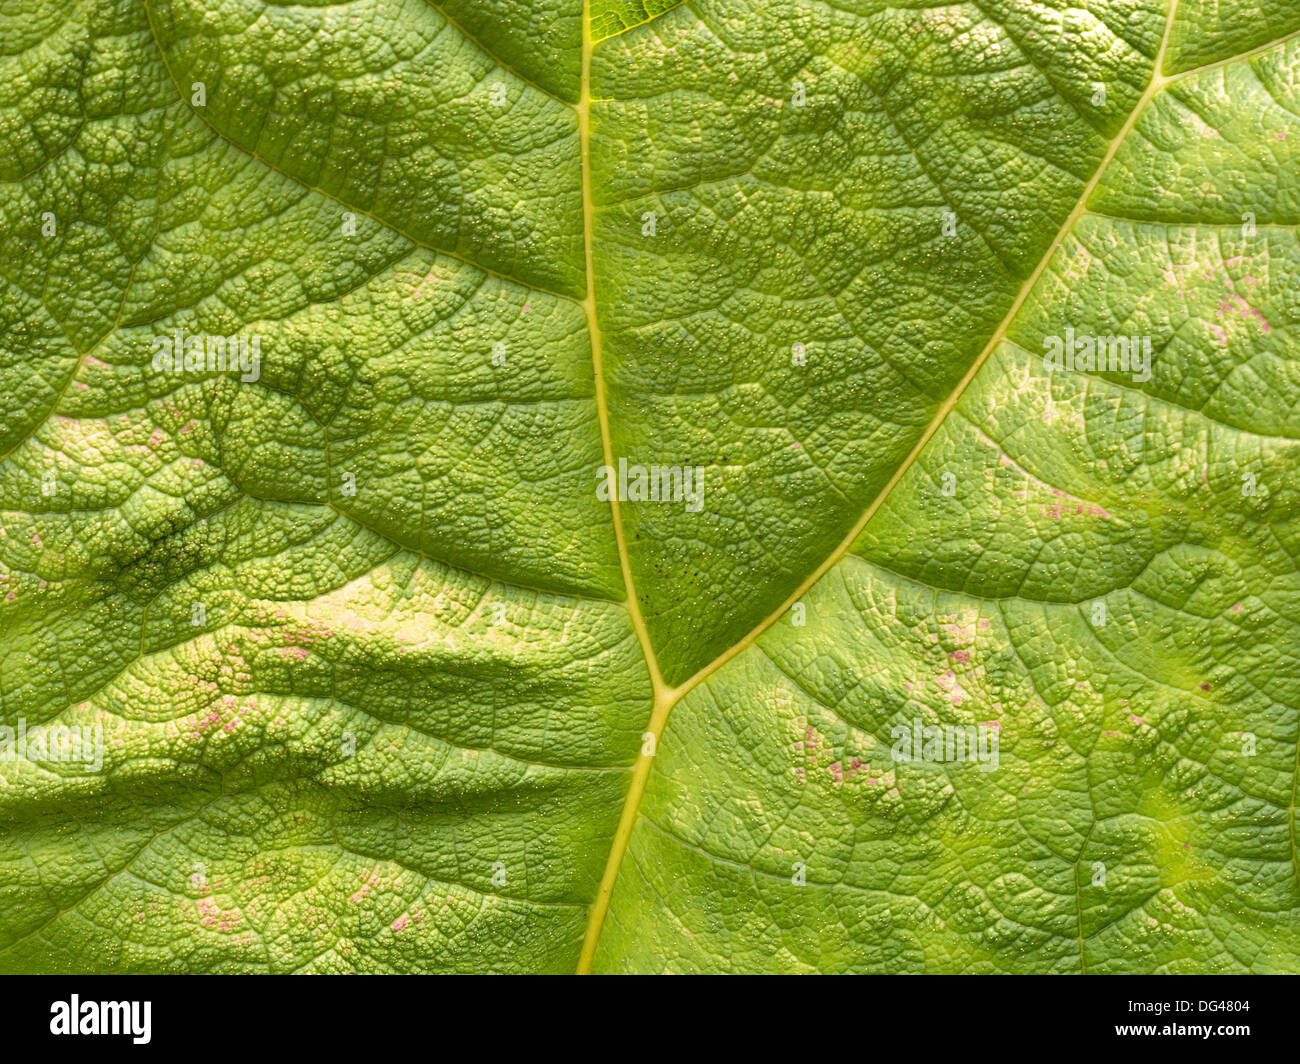 Nahaufnahme des grünen Riesen Rhabarber (Gunnera Manicata) Pflanzenblattes zeigt Y förmige Vene. Stockfoto